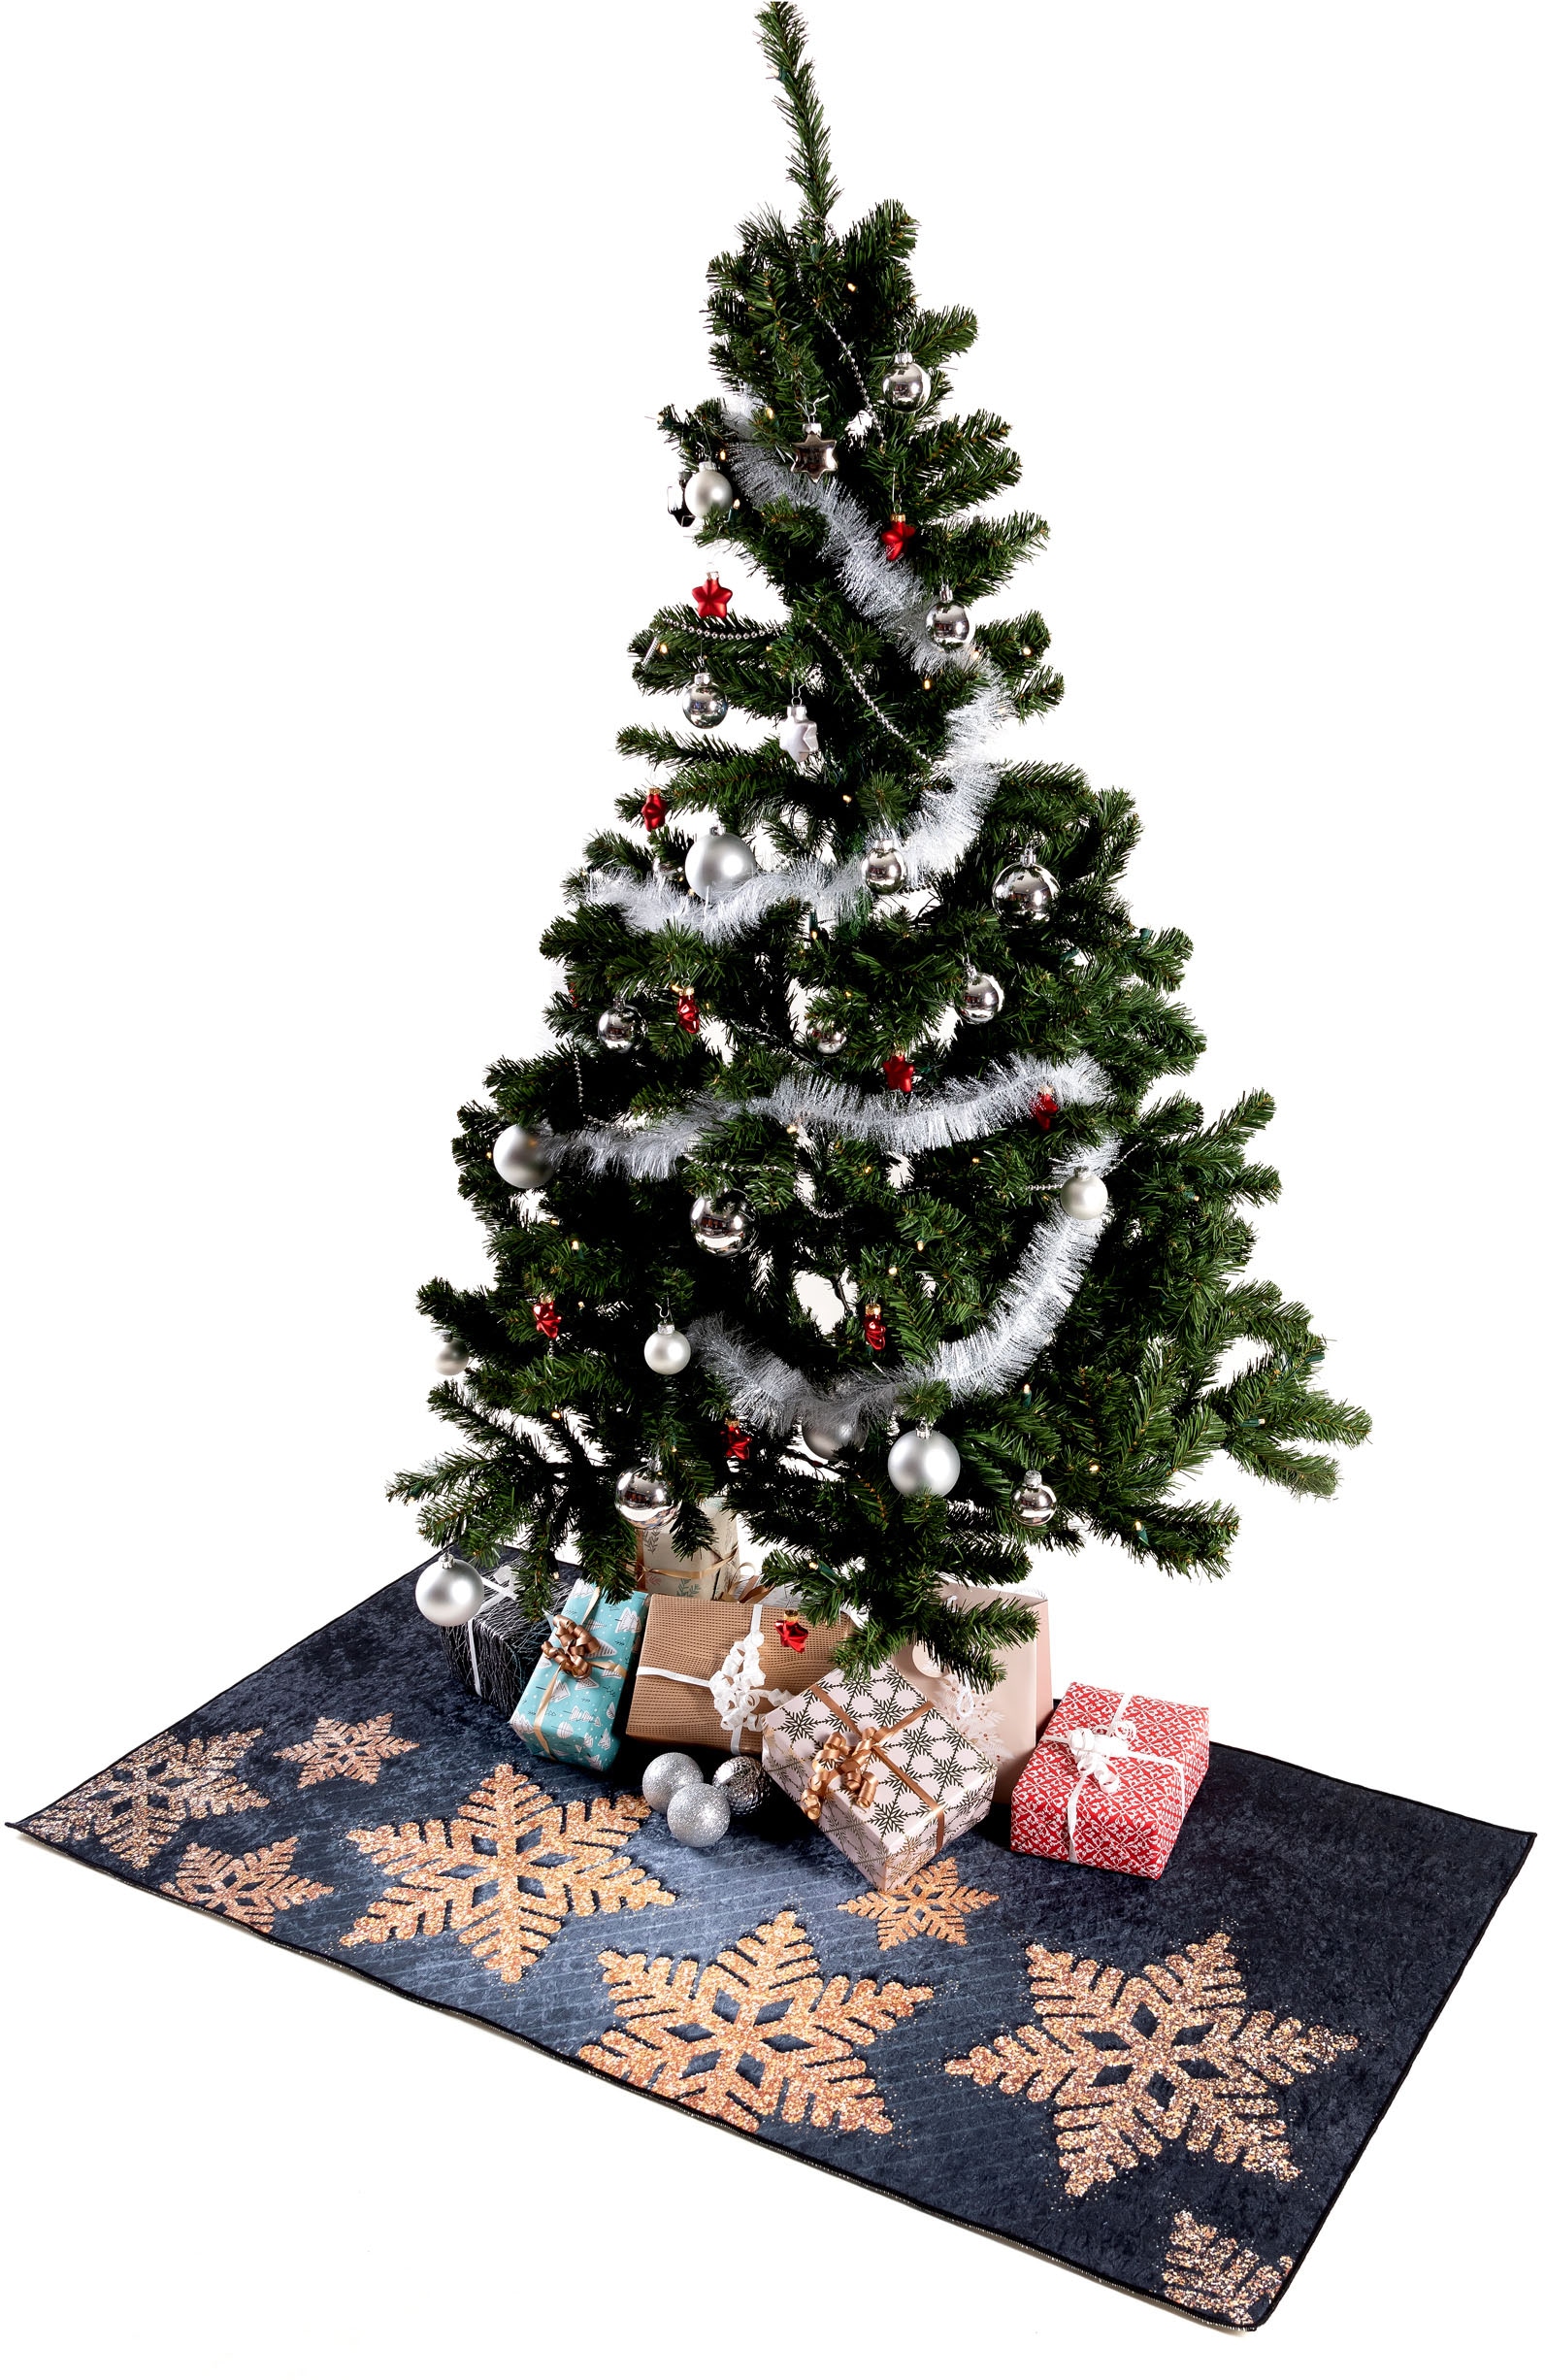 Unterlage waschbar, kaufen 1227«, Sehrazat Teppich »Christmas rechteckig, Weihnachten, jetzt Weihnachtsbaum